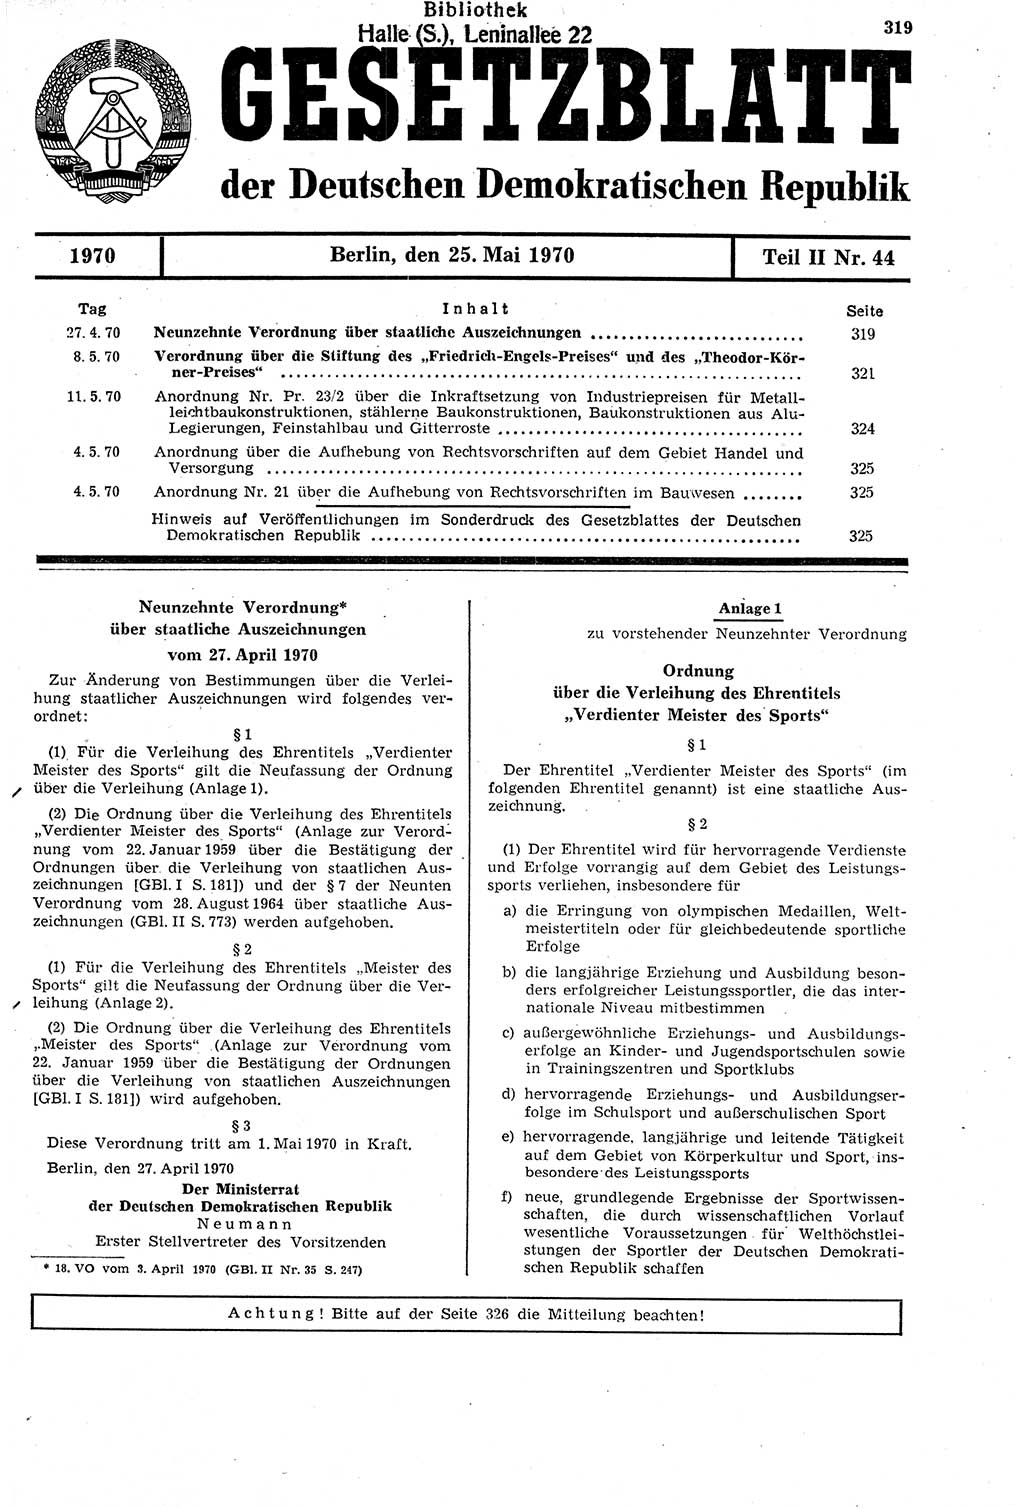 Gesetzblatt (GBl.) der Deutschen Demokratischen Republik (DDR) Teil ⅠⅠ 1970, Seite 319 (GBl. DDR ⅠⅠ 1970, S. 319)